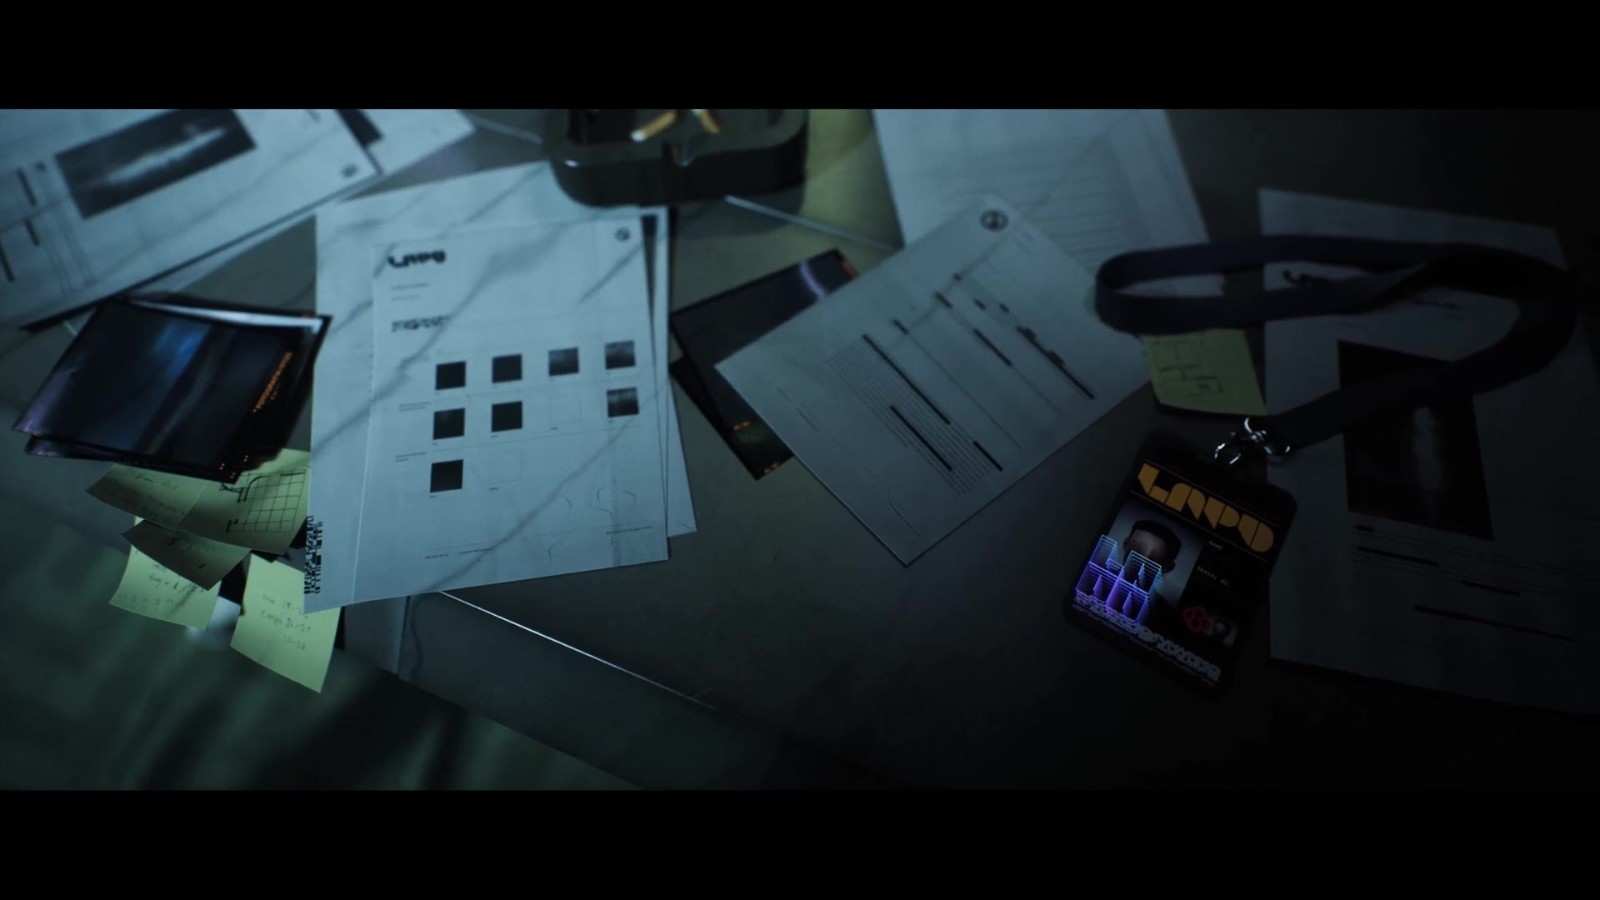 《银翼杀手2033：迷宫》面向主机/PC平台公布